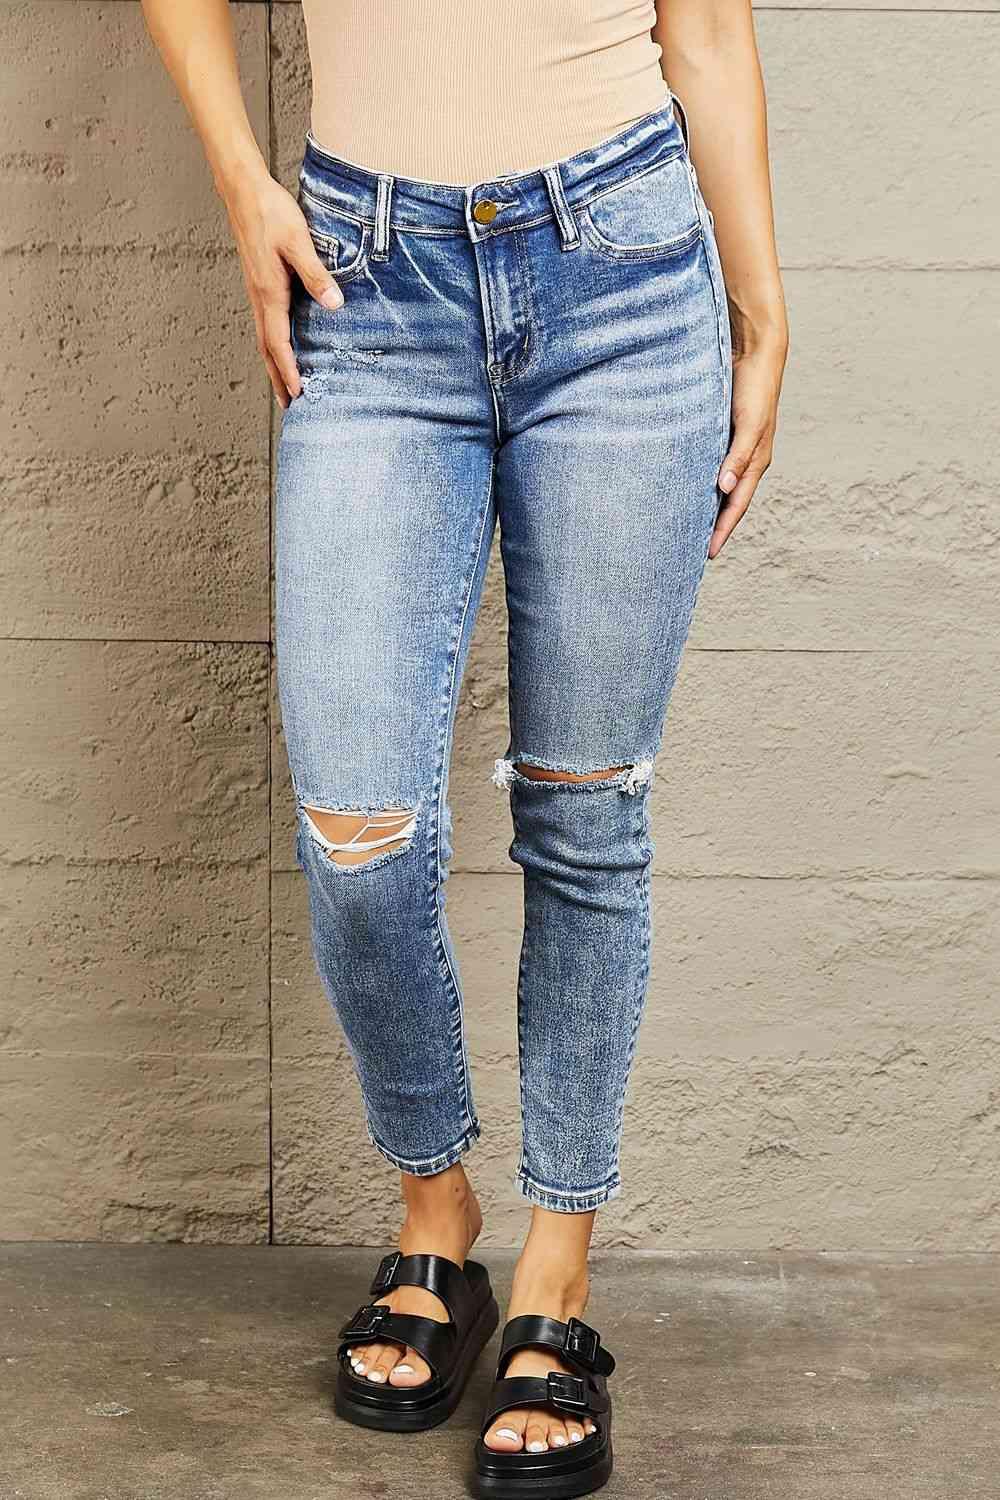 BAYEAS Mid Rise Distressed Skinny Jeans - Vesteeto